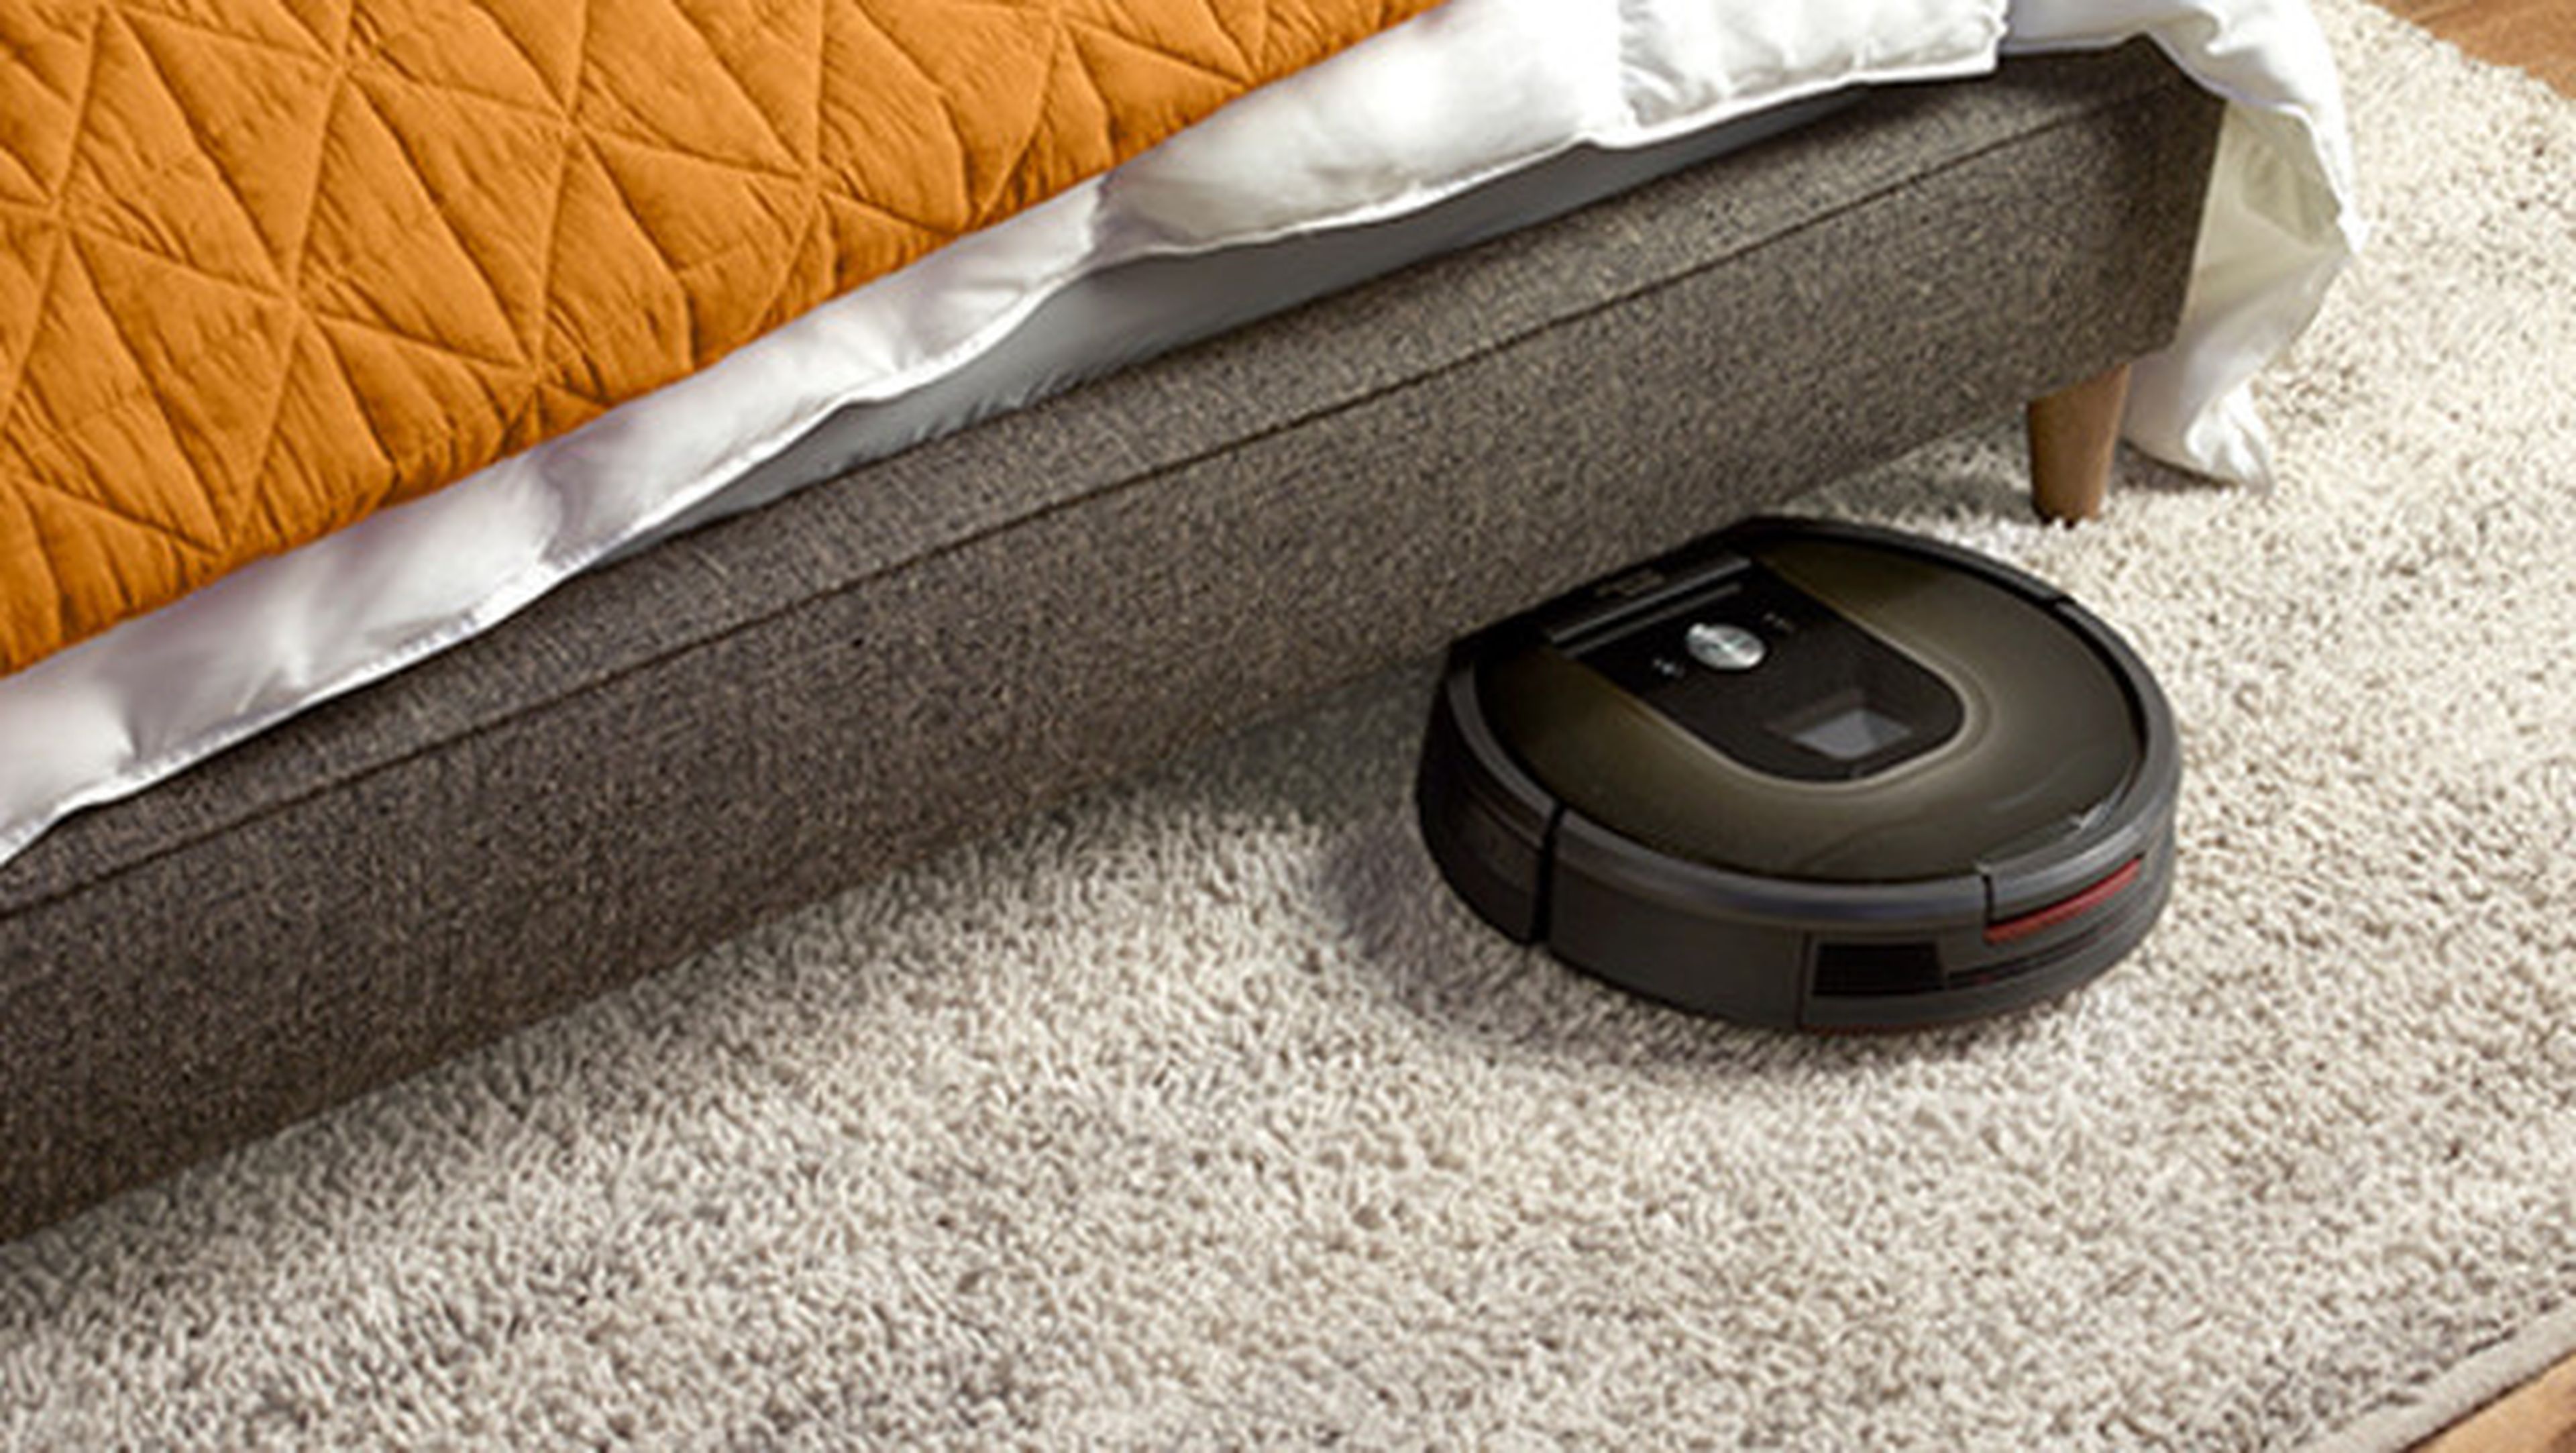 Tu iRobot Roomba podría poner en peligro tu privacidad.